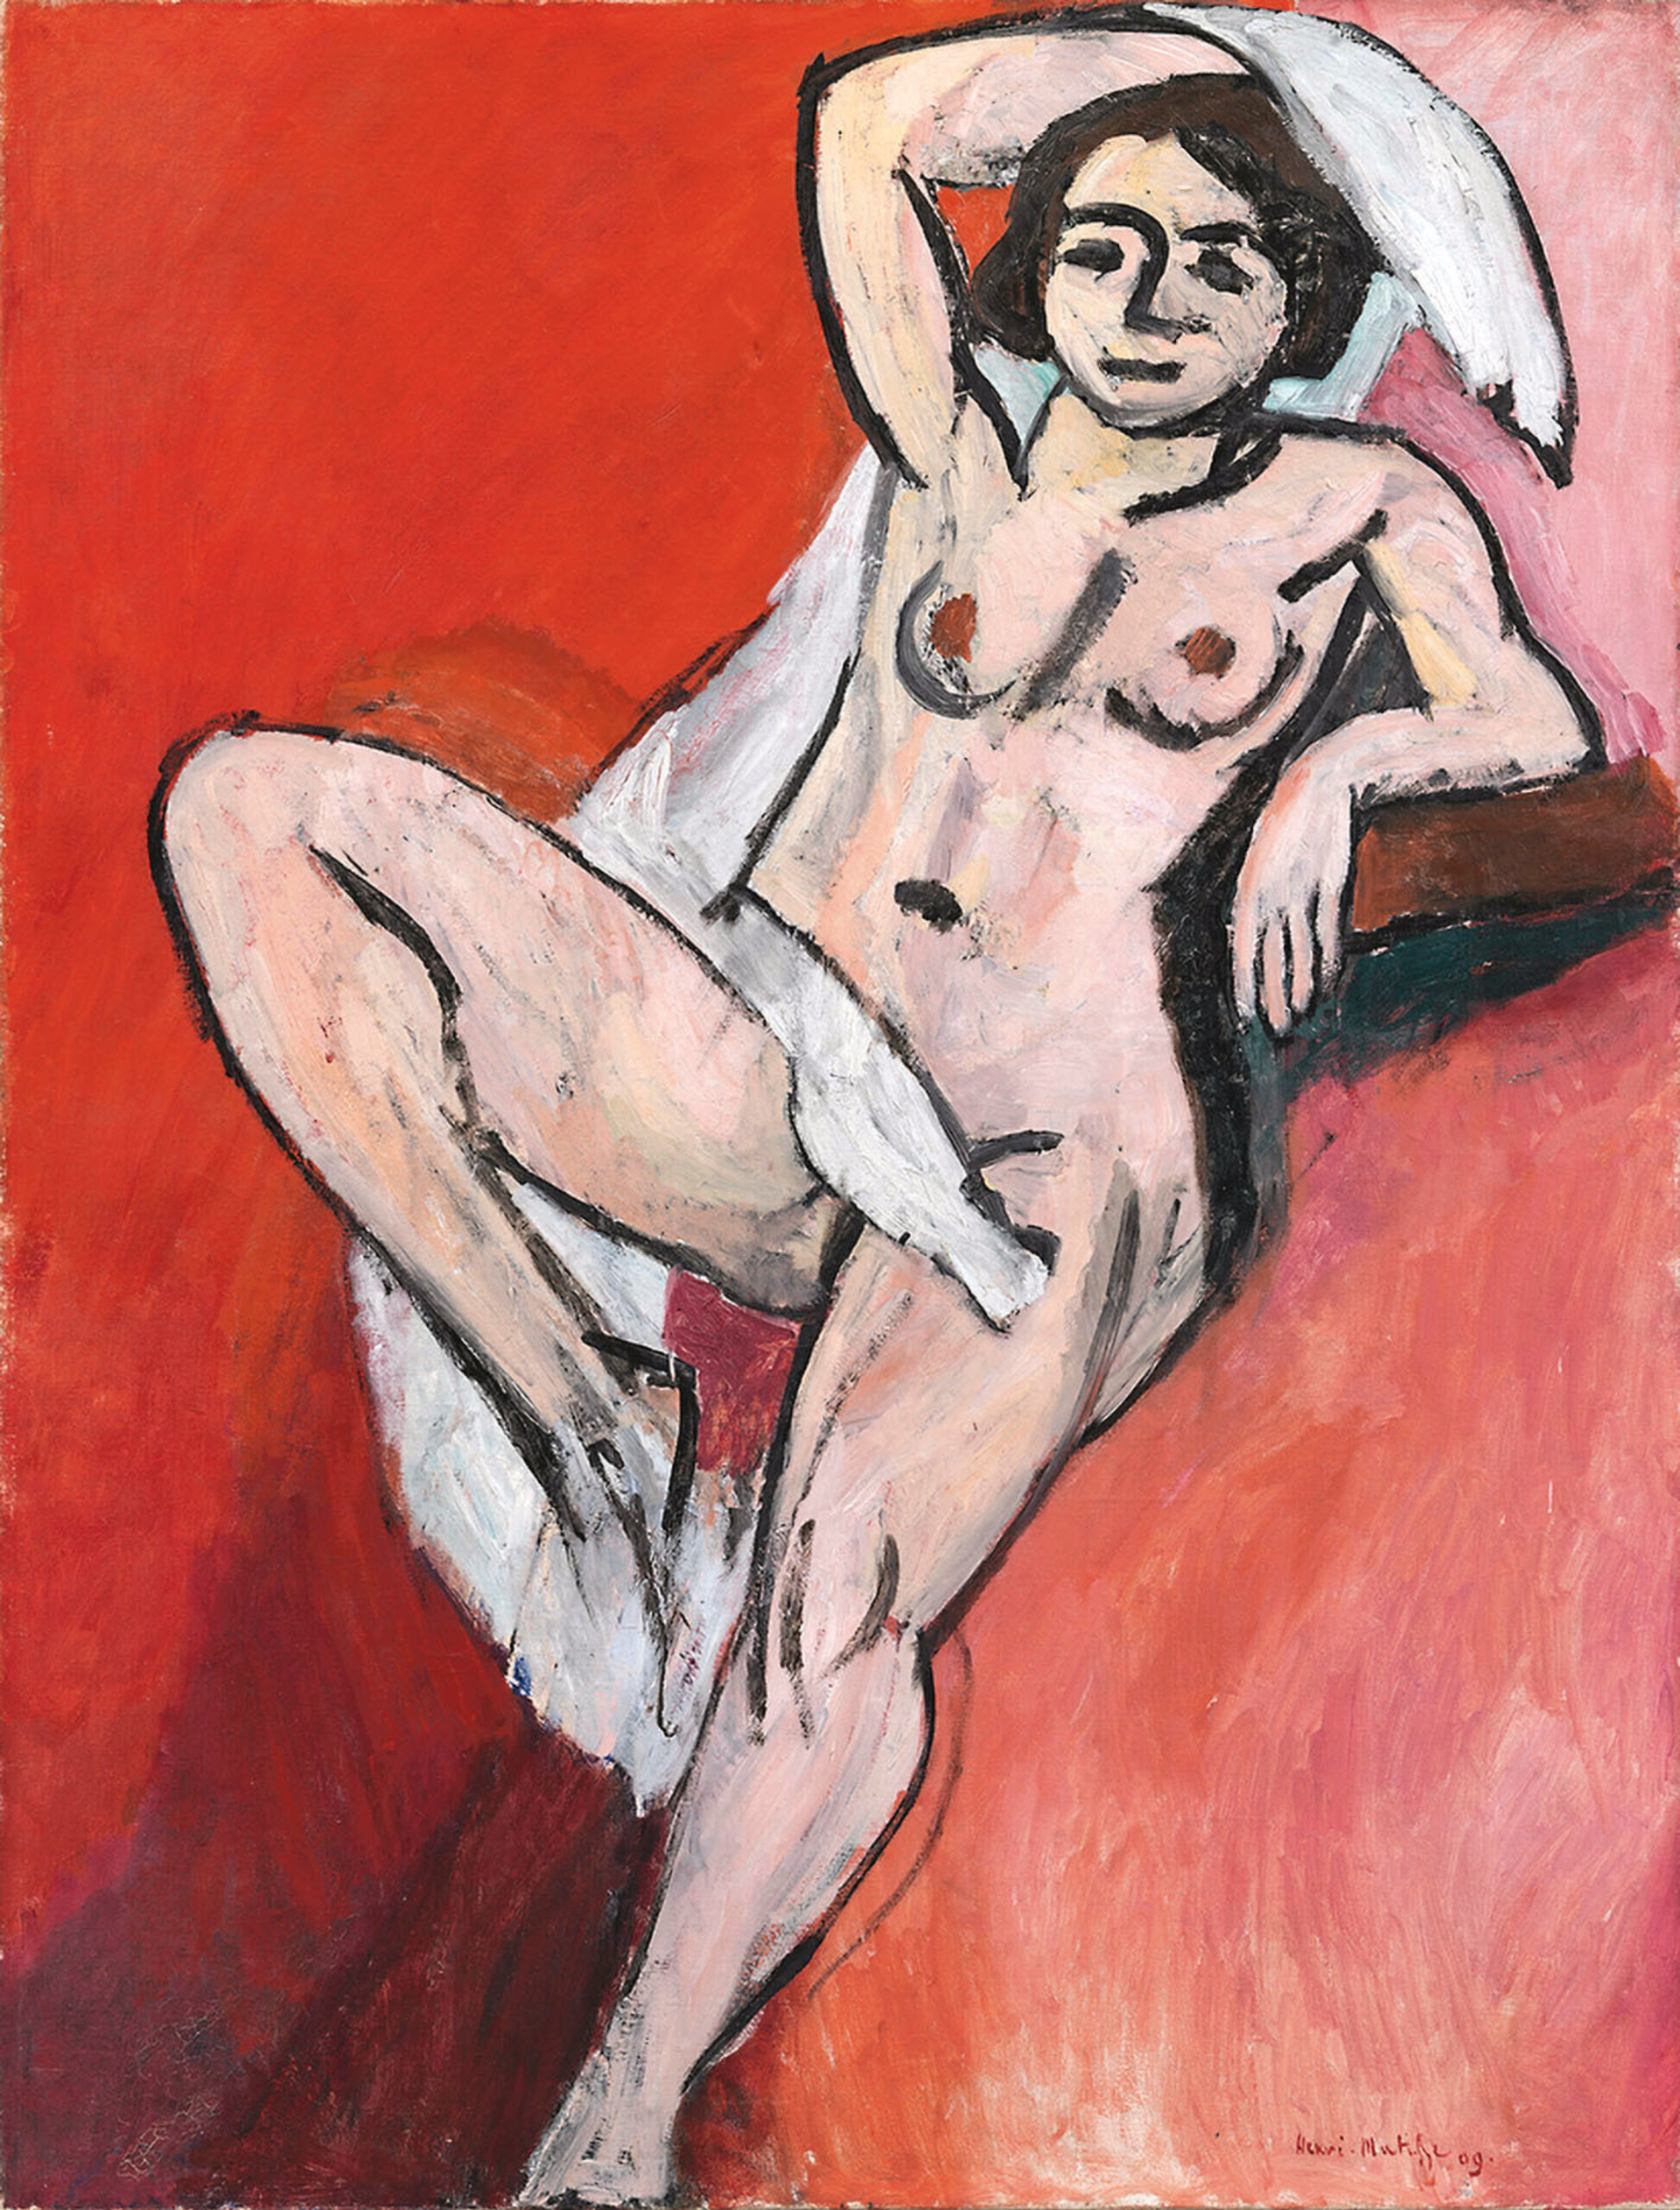 Henri-Matisse-Noegen-kvinde-med-hvidt-klaede-PRESSEFOTO-1-scaled.jpg